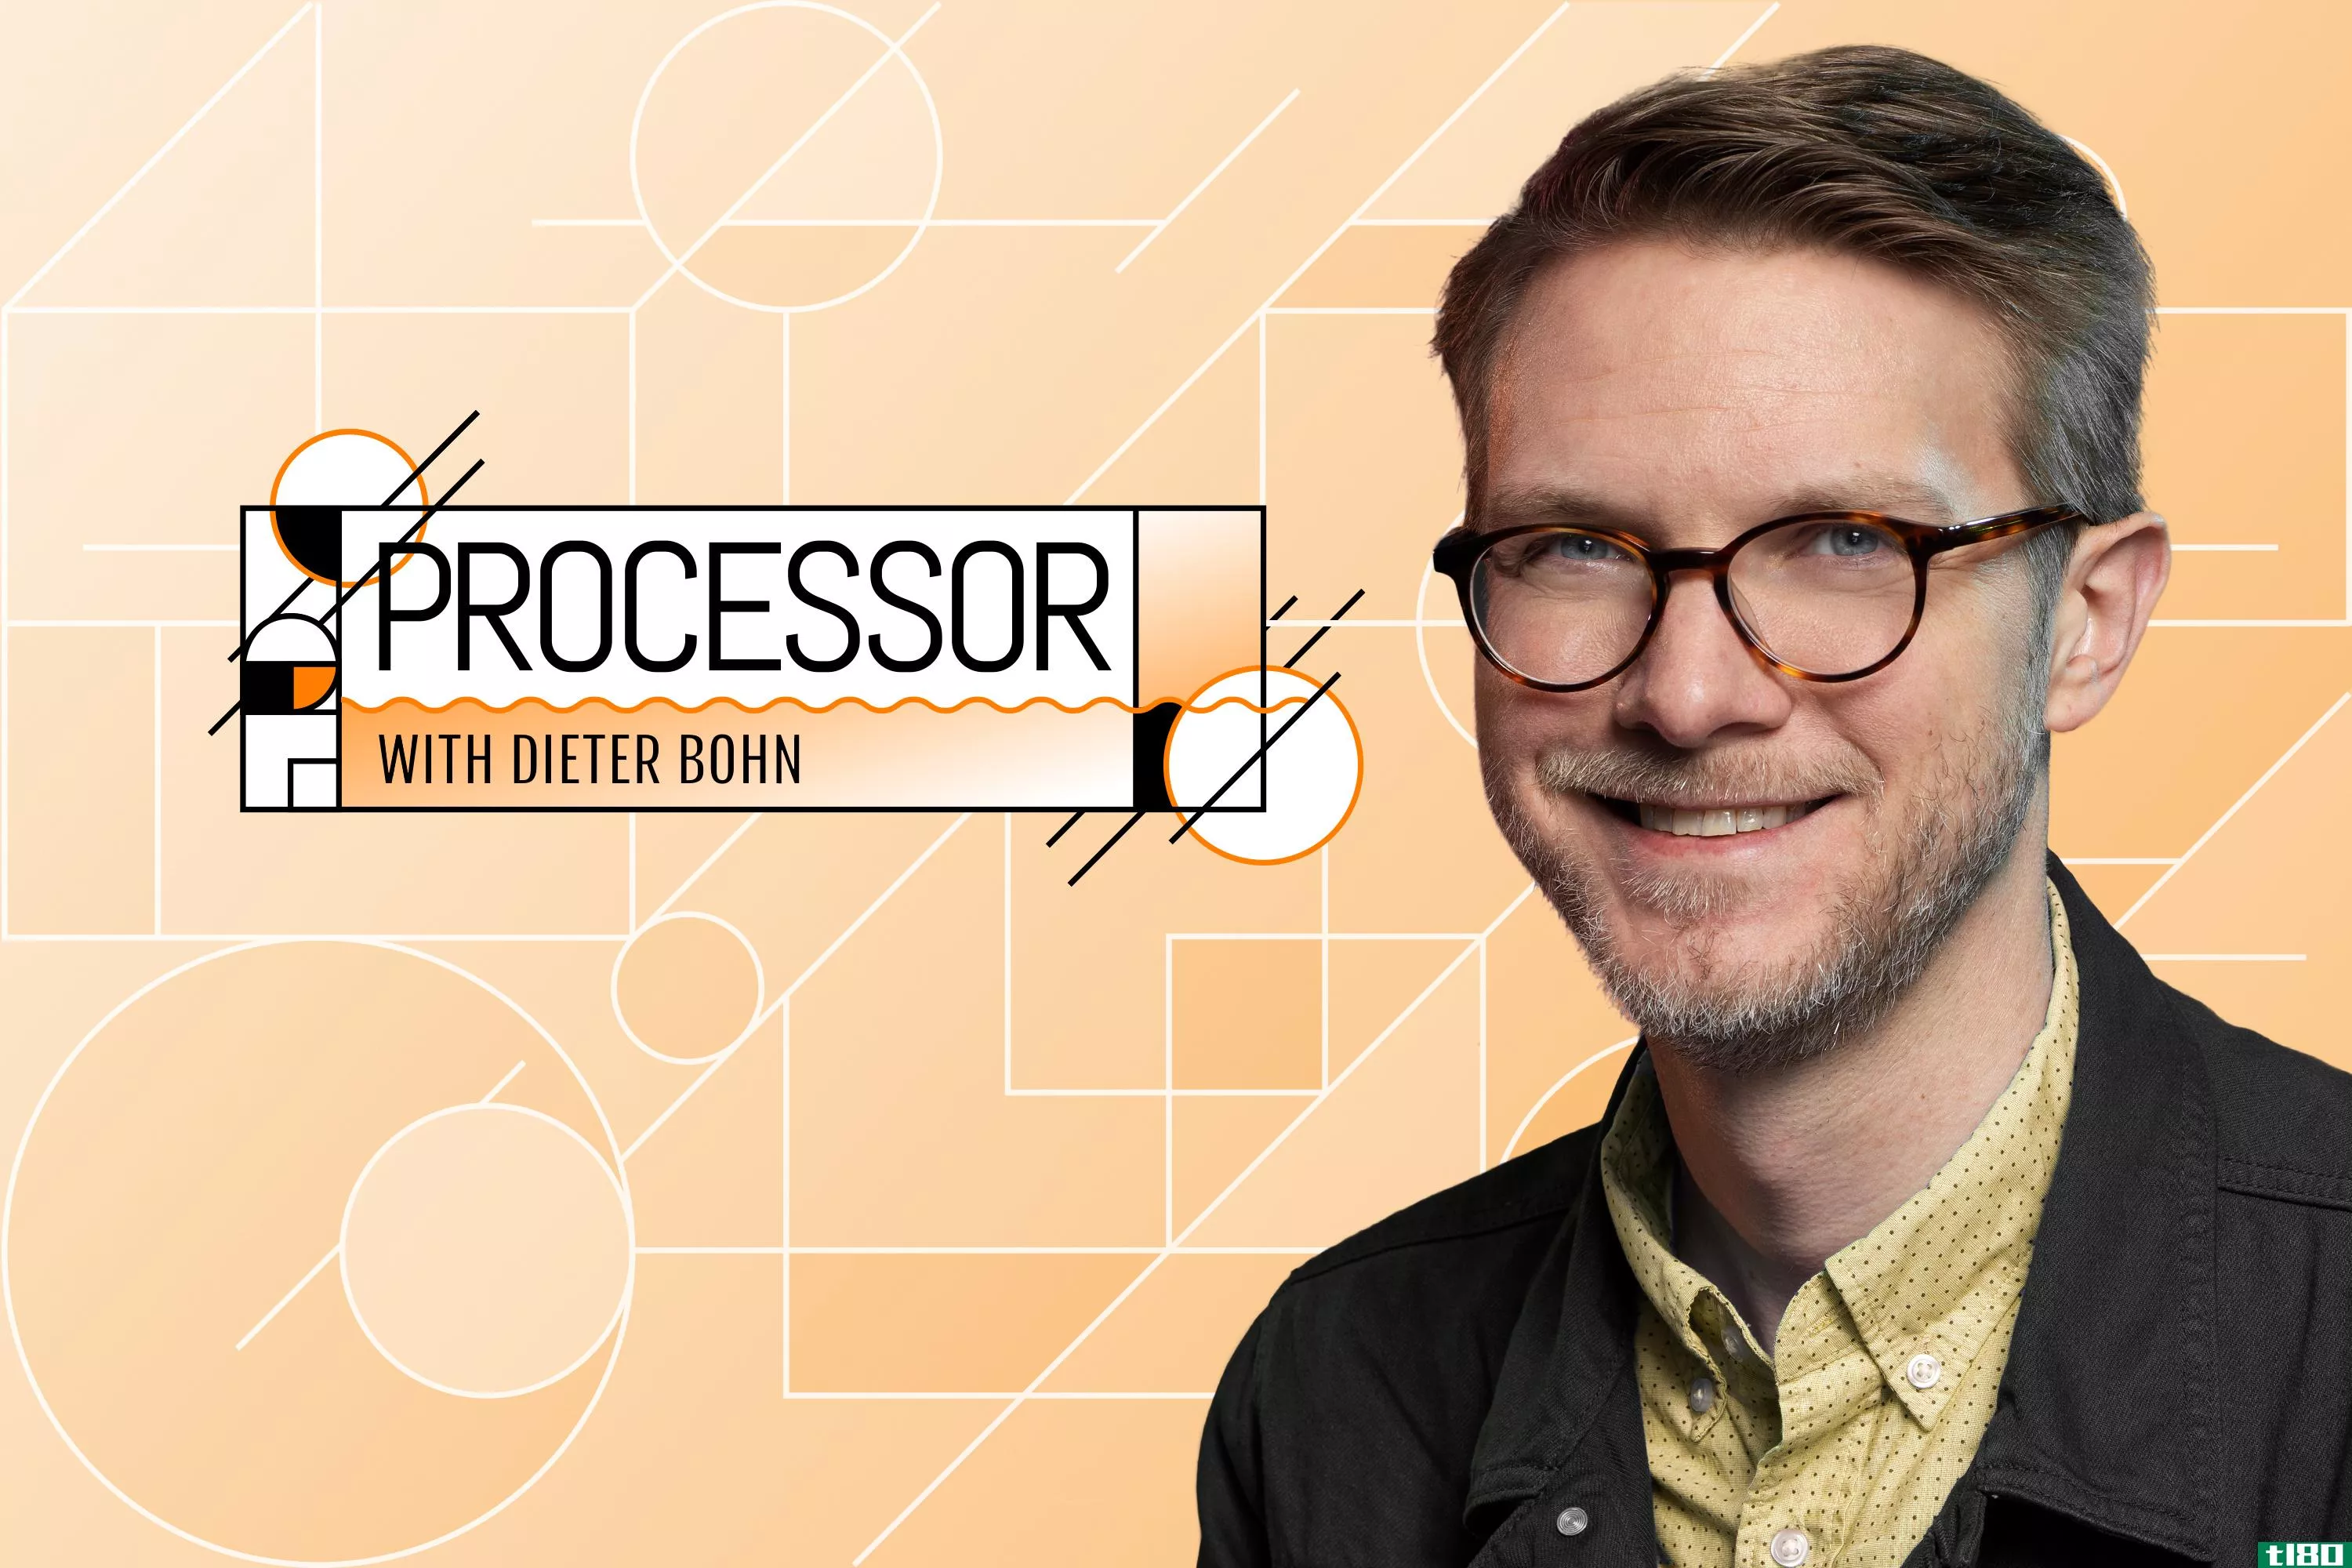 欢迎来到processor，dieter bohn撰写的关于消费科技的时事通讯